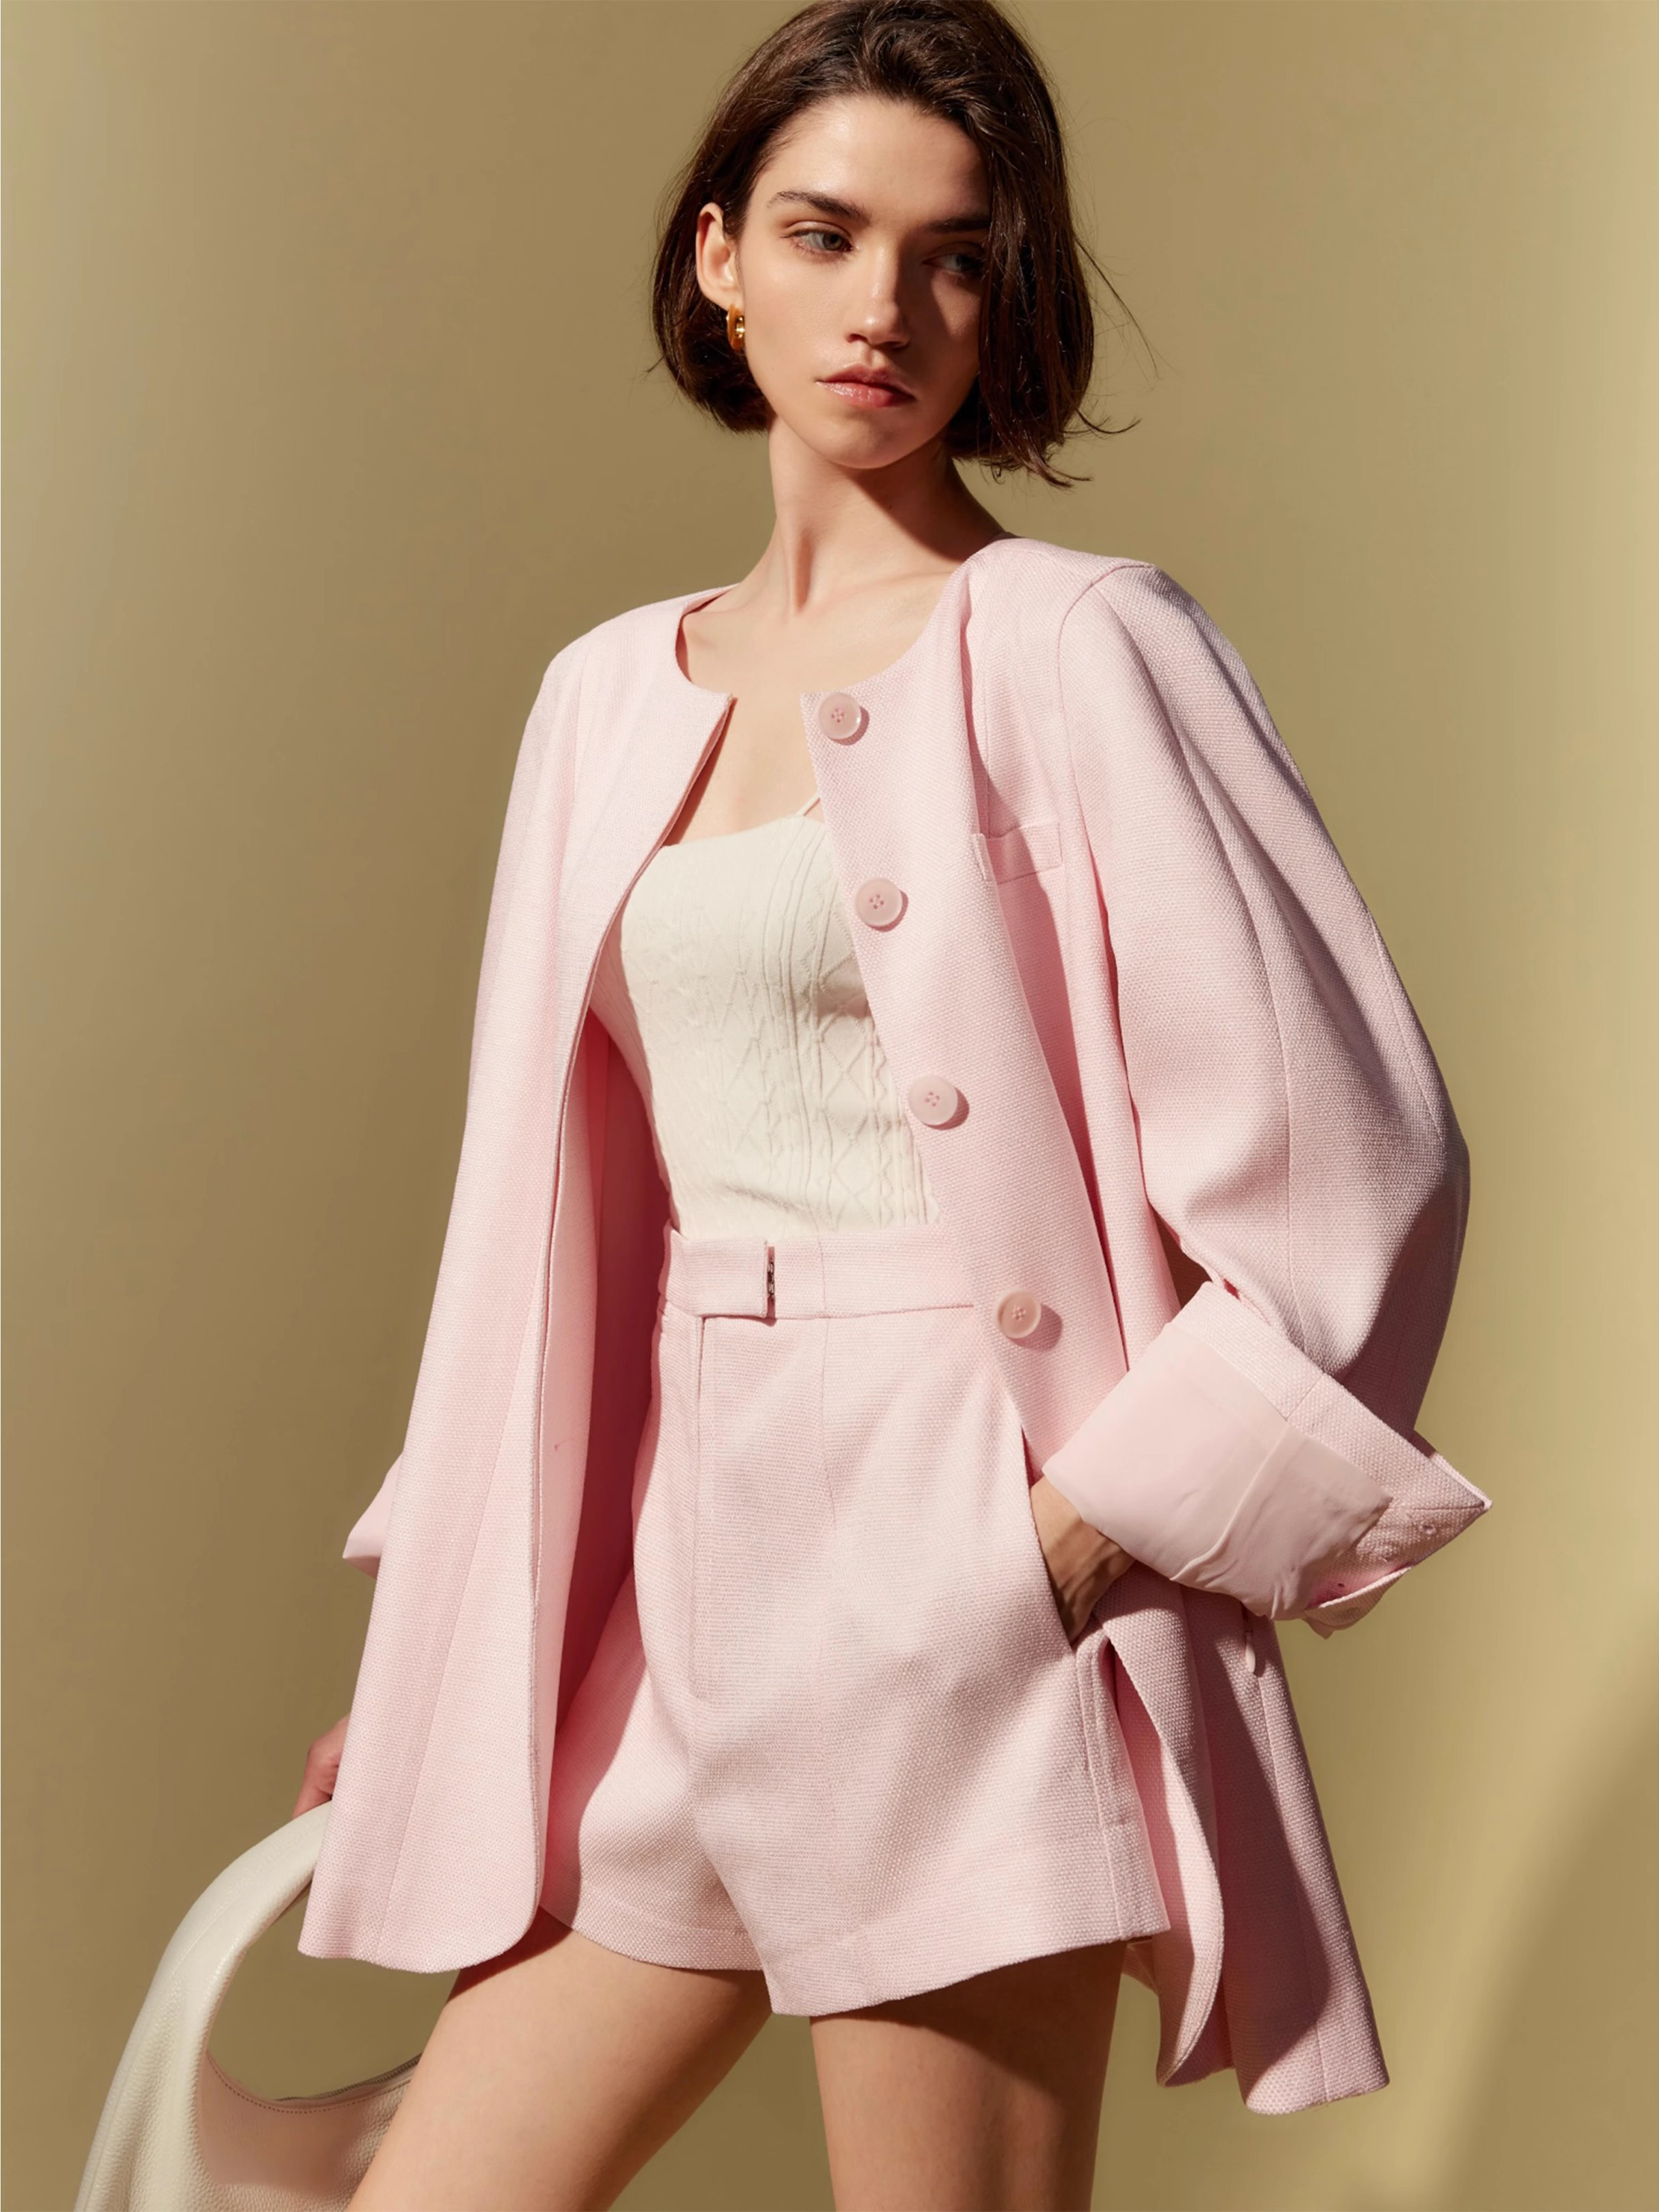 Fabricant de tenue de short blazer rose décontracté en Chine